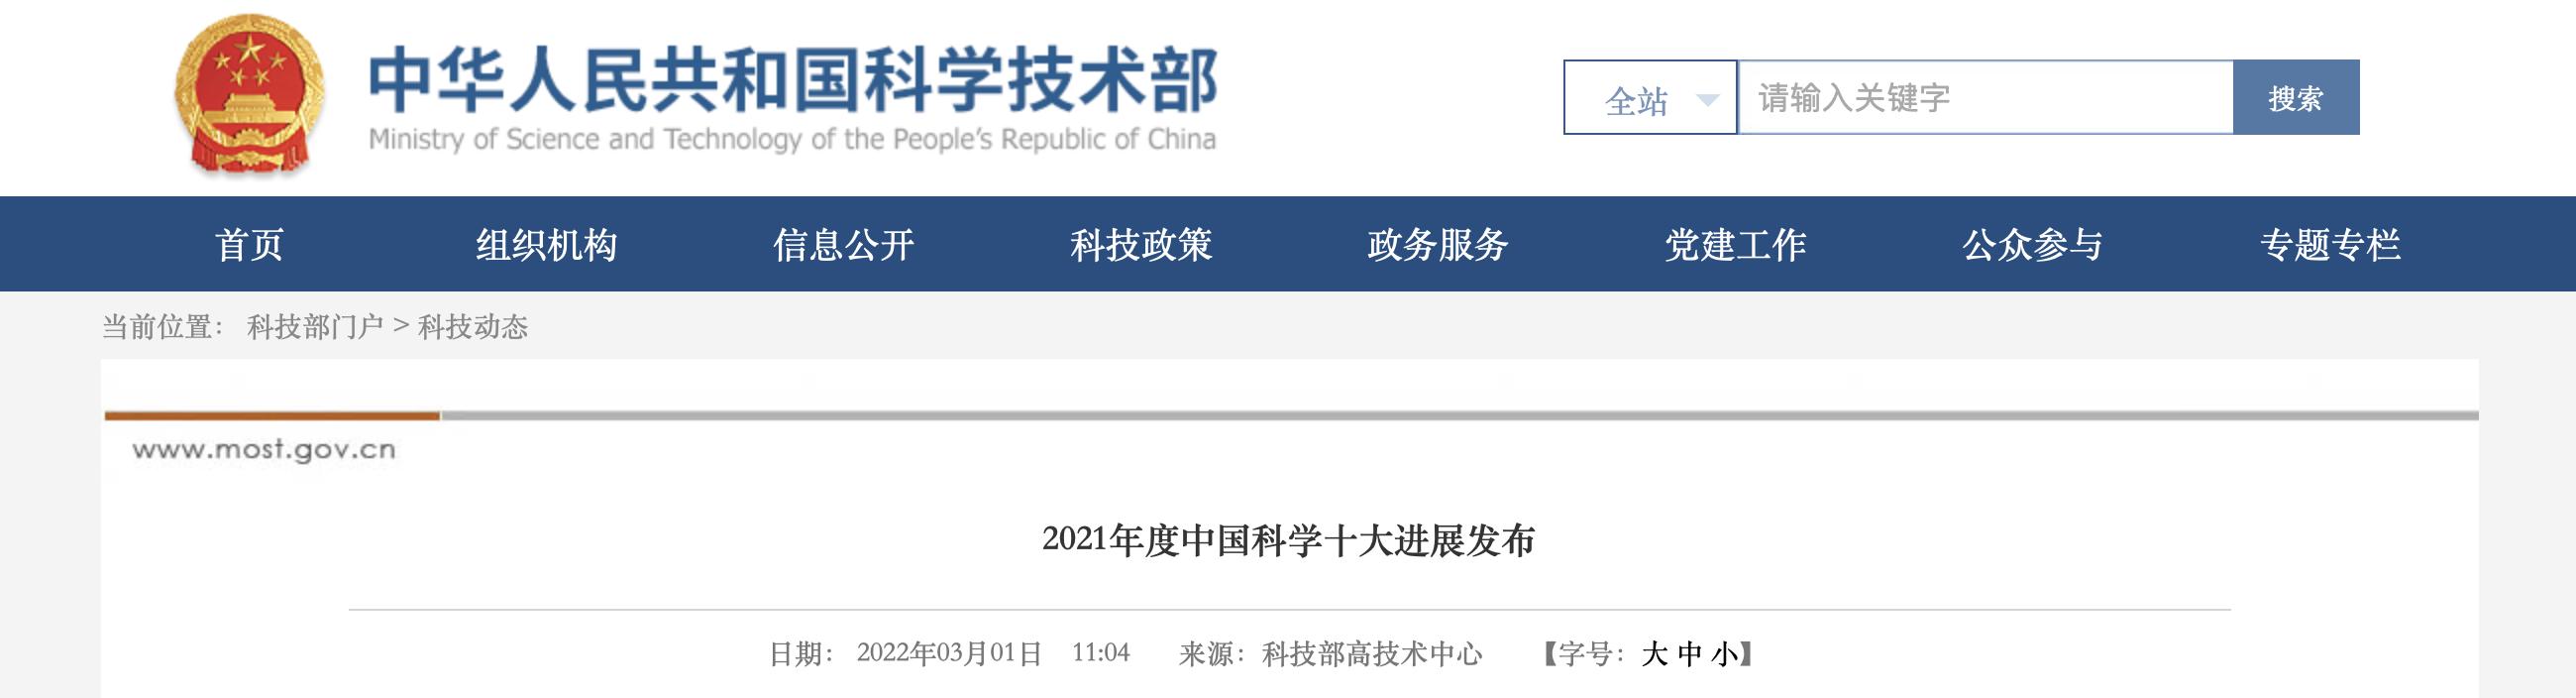 中国科大“祖冲之号”入选2021年度中国科学十大进展